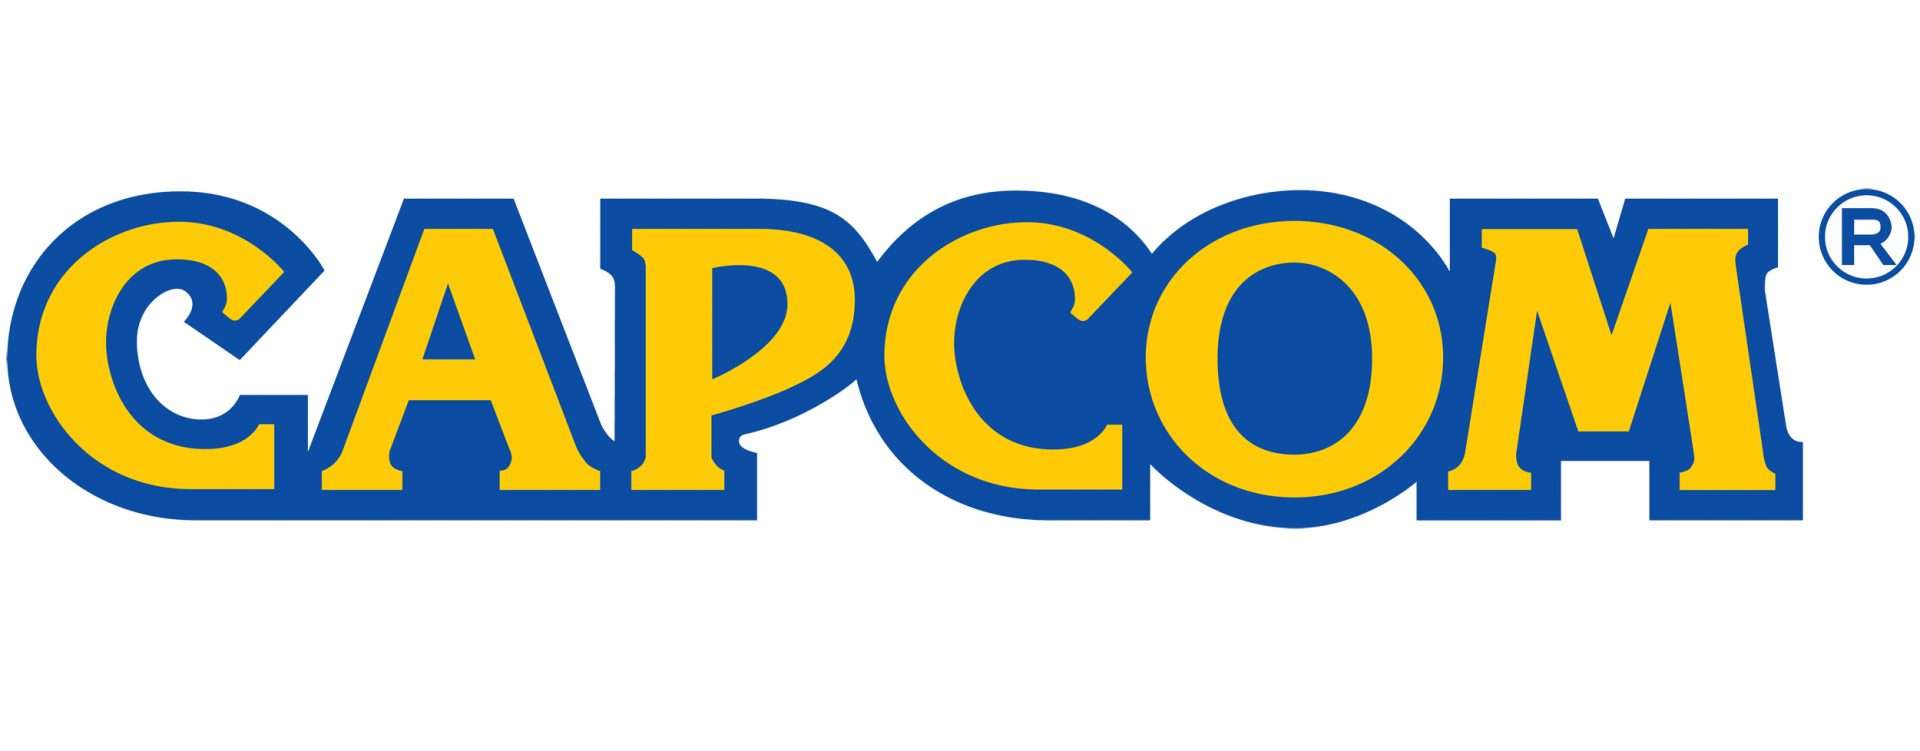 Capcom nombra a Rob Dyer nuevo director de operaciones en EE.UU.